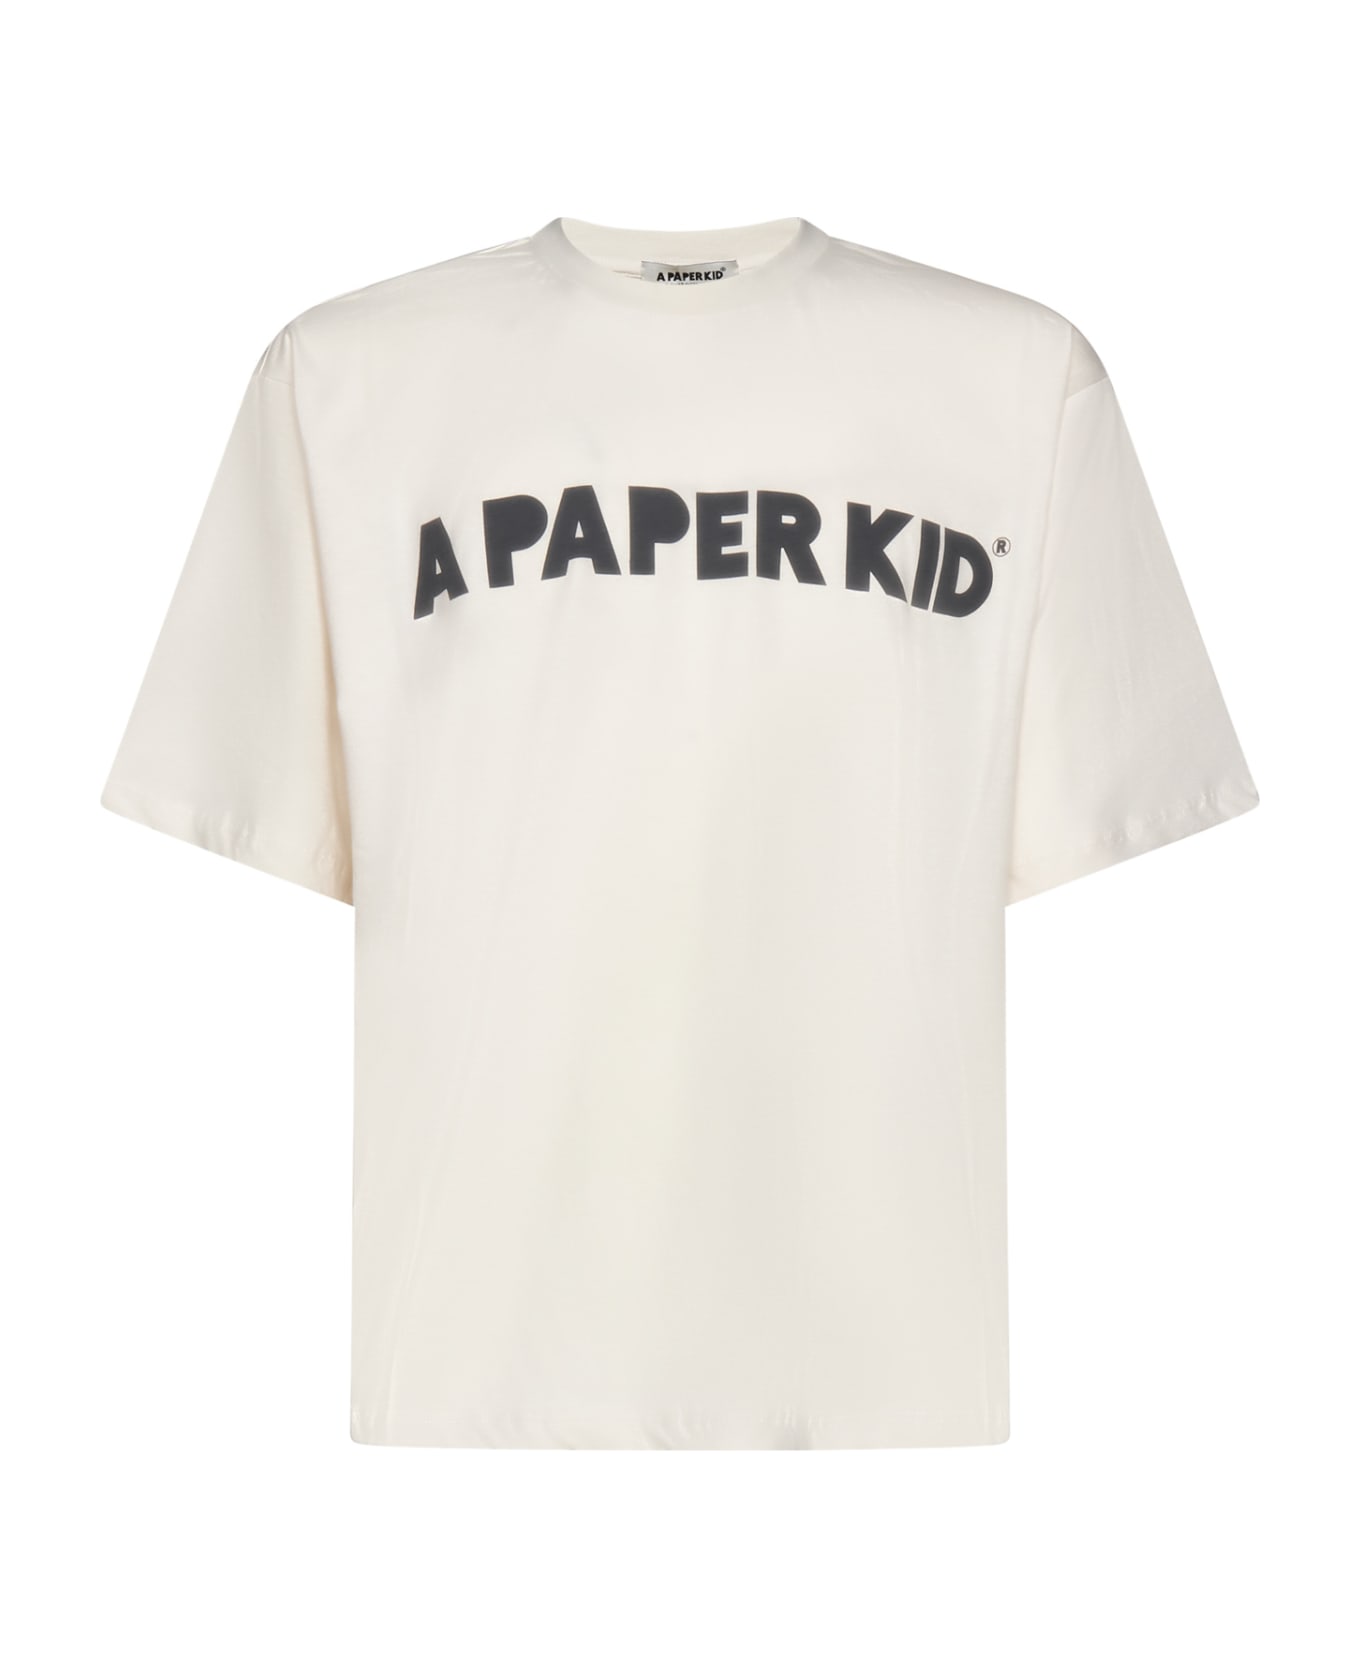 A Paper Kid T-Shirt - Cream